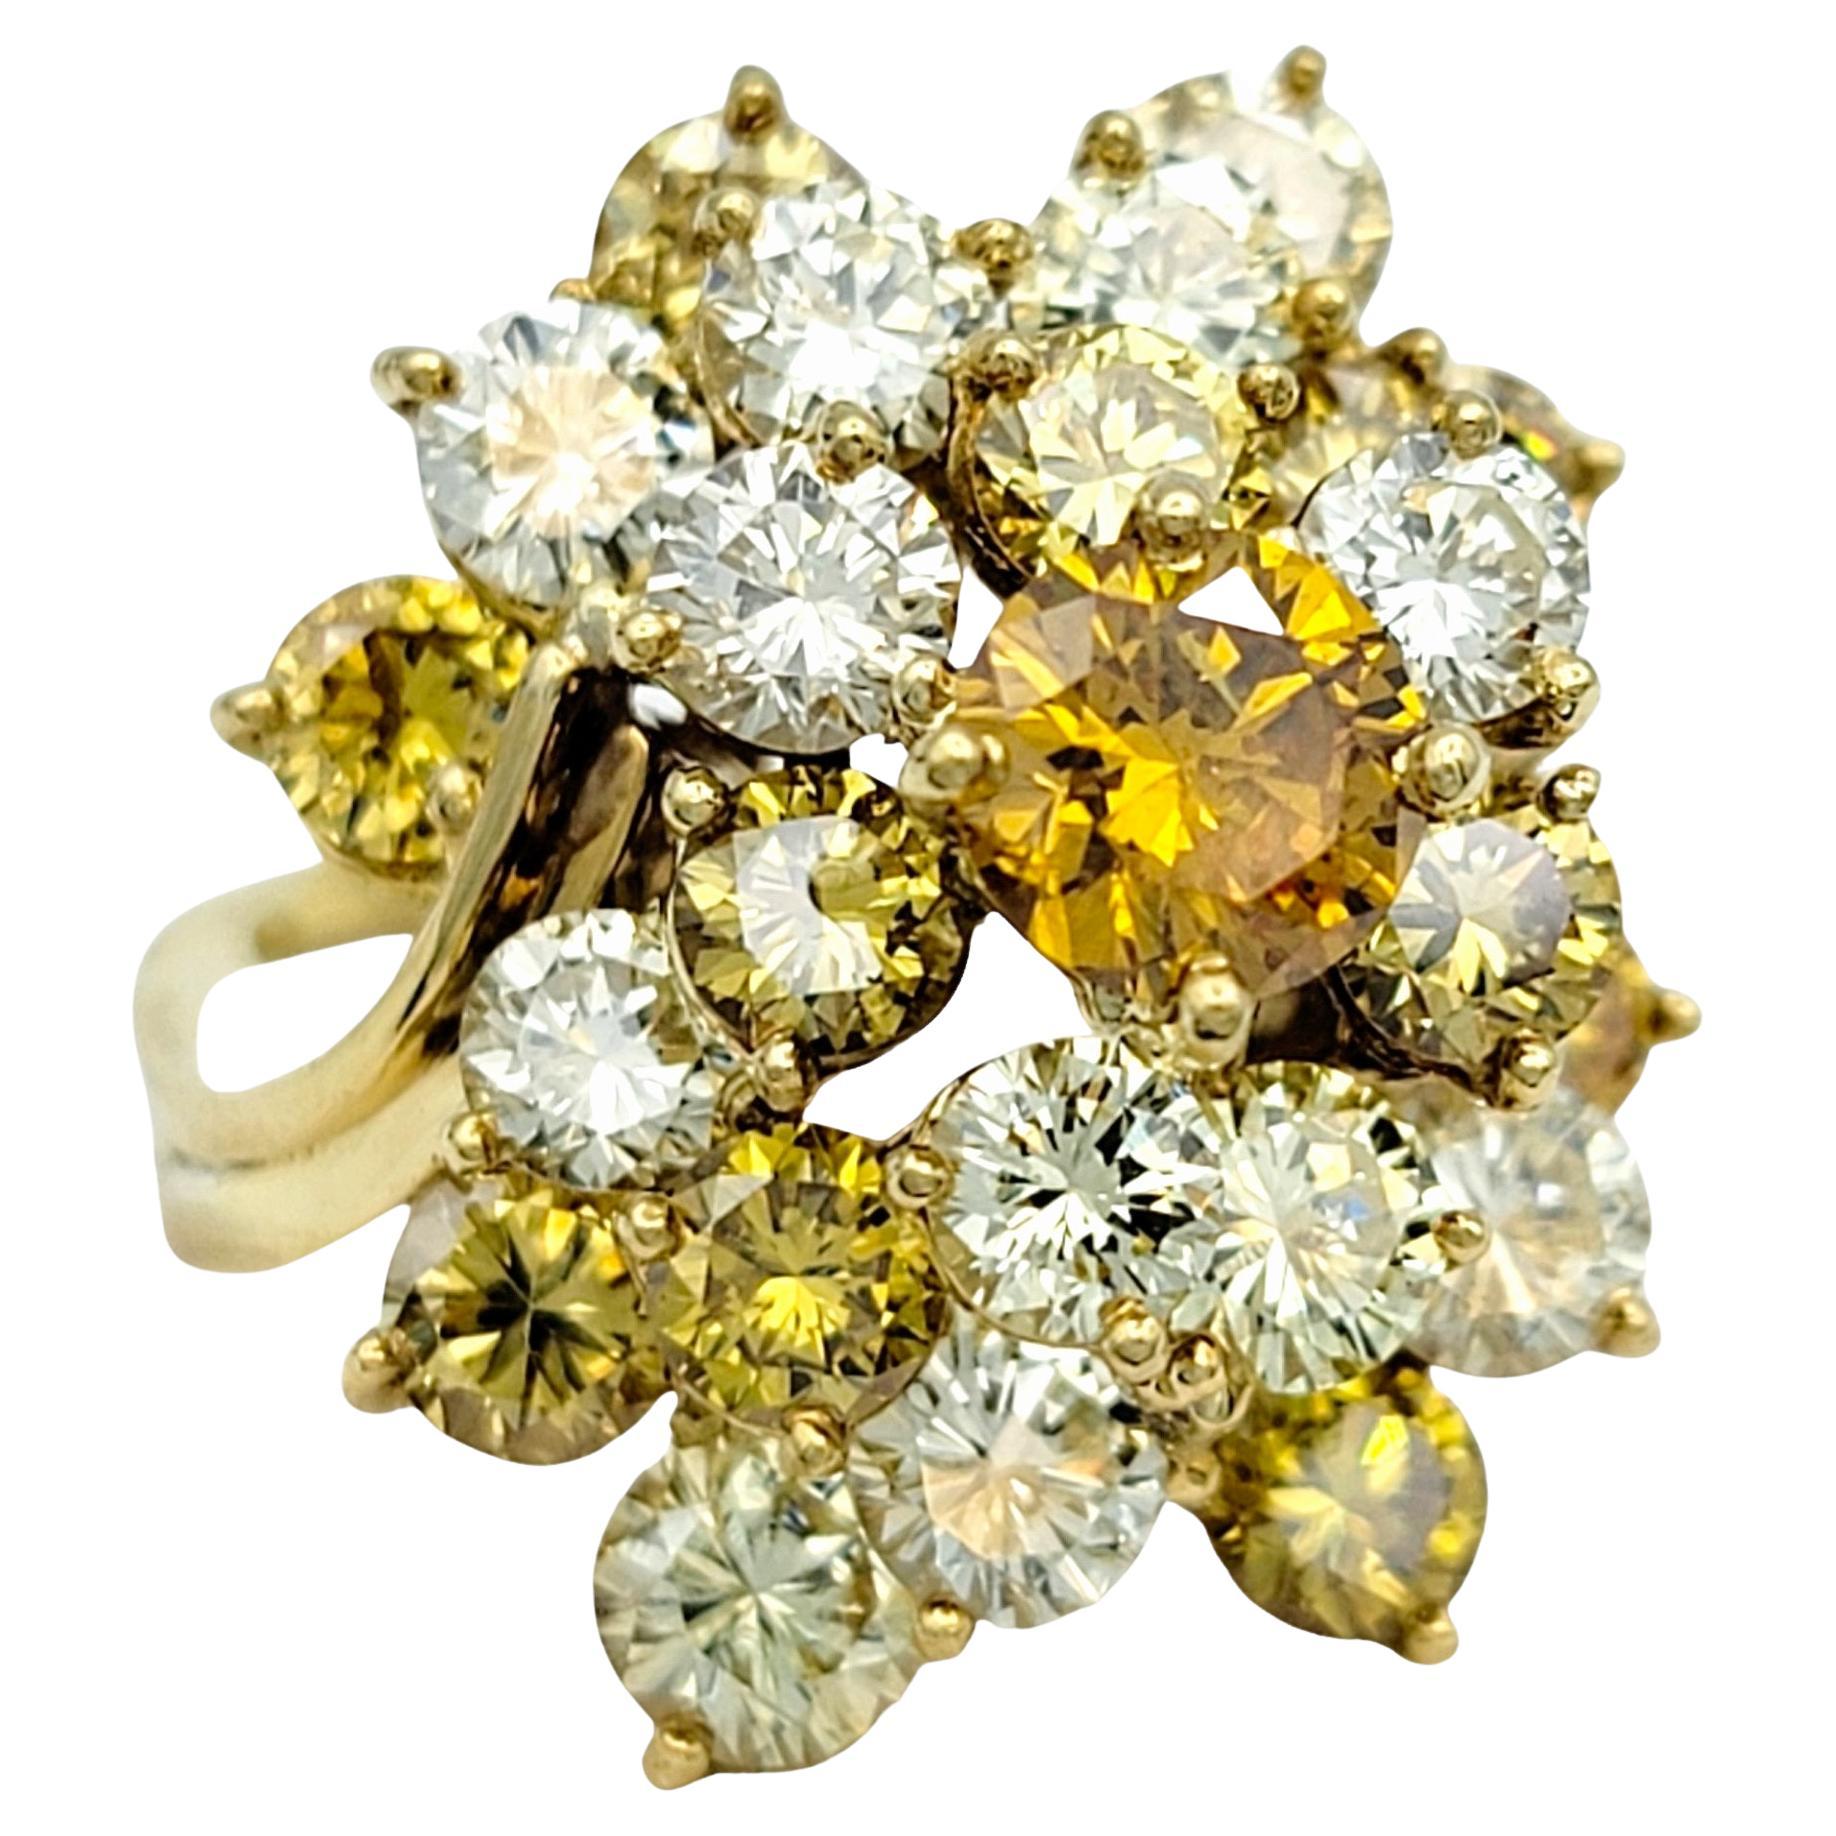 Ringgröße: 6

Dieser atemberaubende Vintage-Diamant-Cocktailring, gefasst in luxuriösem 18-karätigem Gelbgold, wird Sie sicher beeindrucken. Das Herzstück dieses exquisiten Rings ist ein schillernder Fancy Orange-Diamant, der mit seinem seltenen und